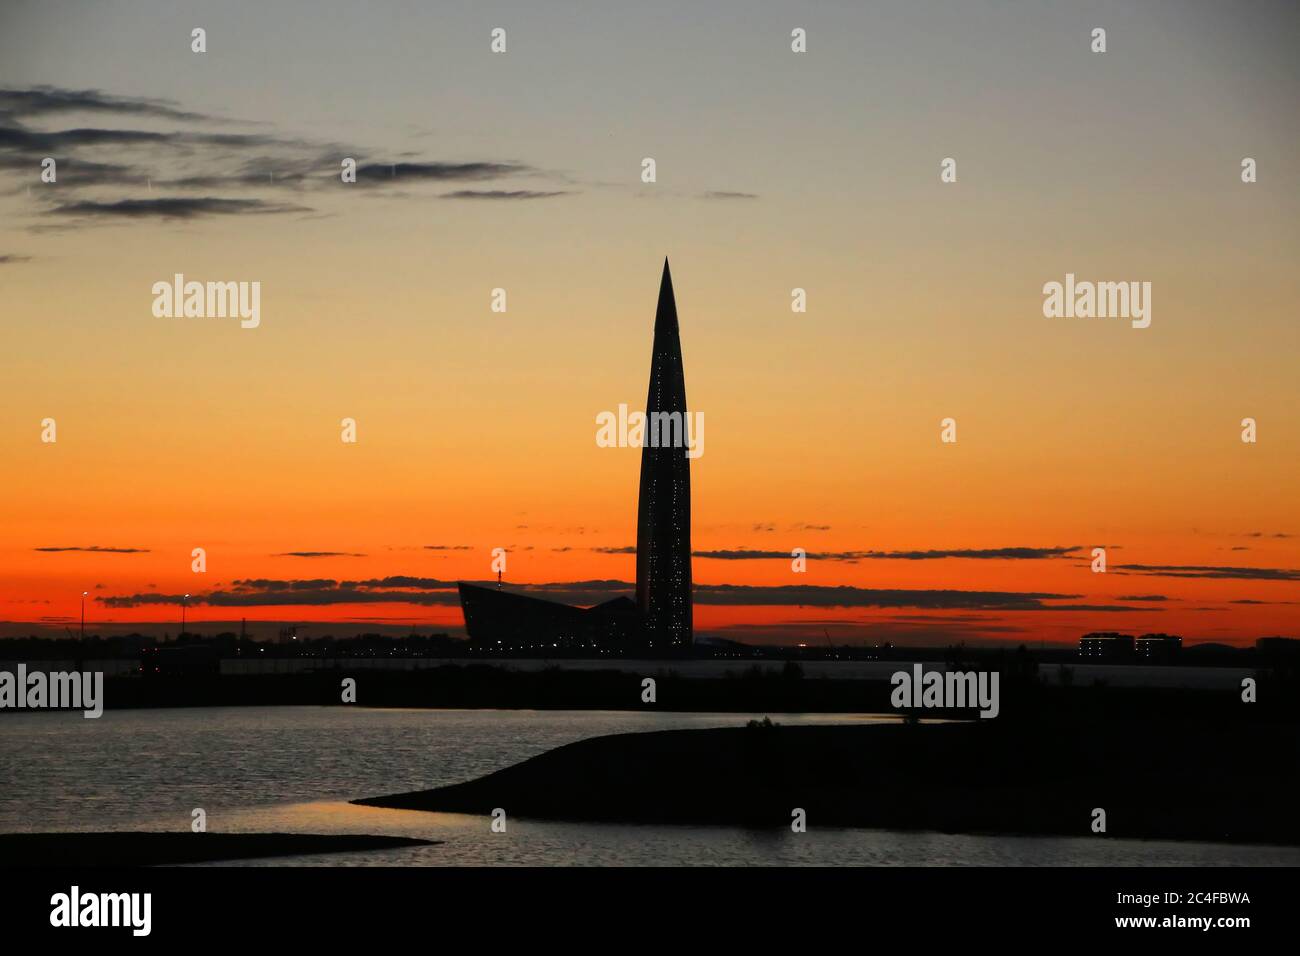 Silueta de la ciudad al atardecer con el rascacielos del Centro Lakhta, en el barrio noroeste de Lakhta en San Petersburgo, Rusia. Foto de stock